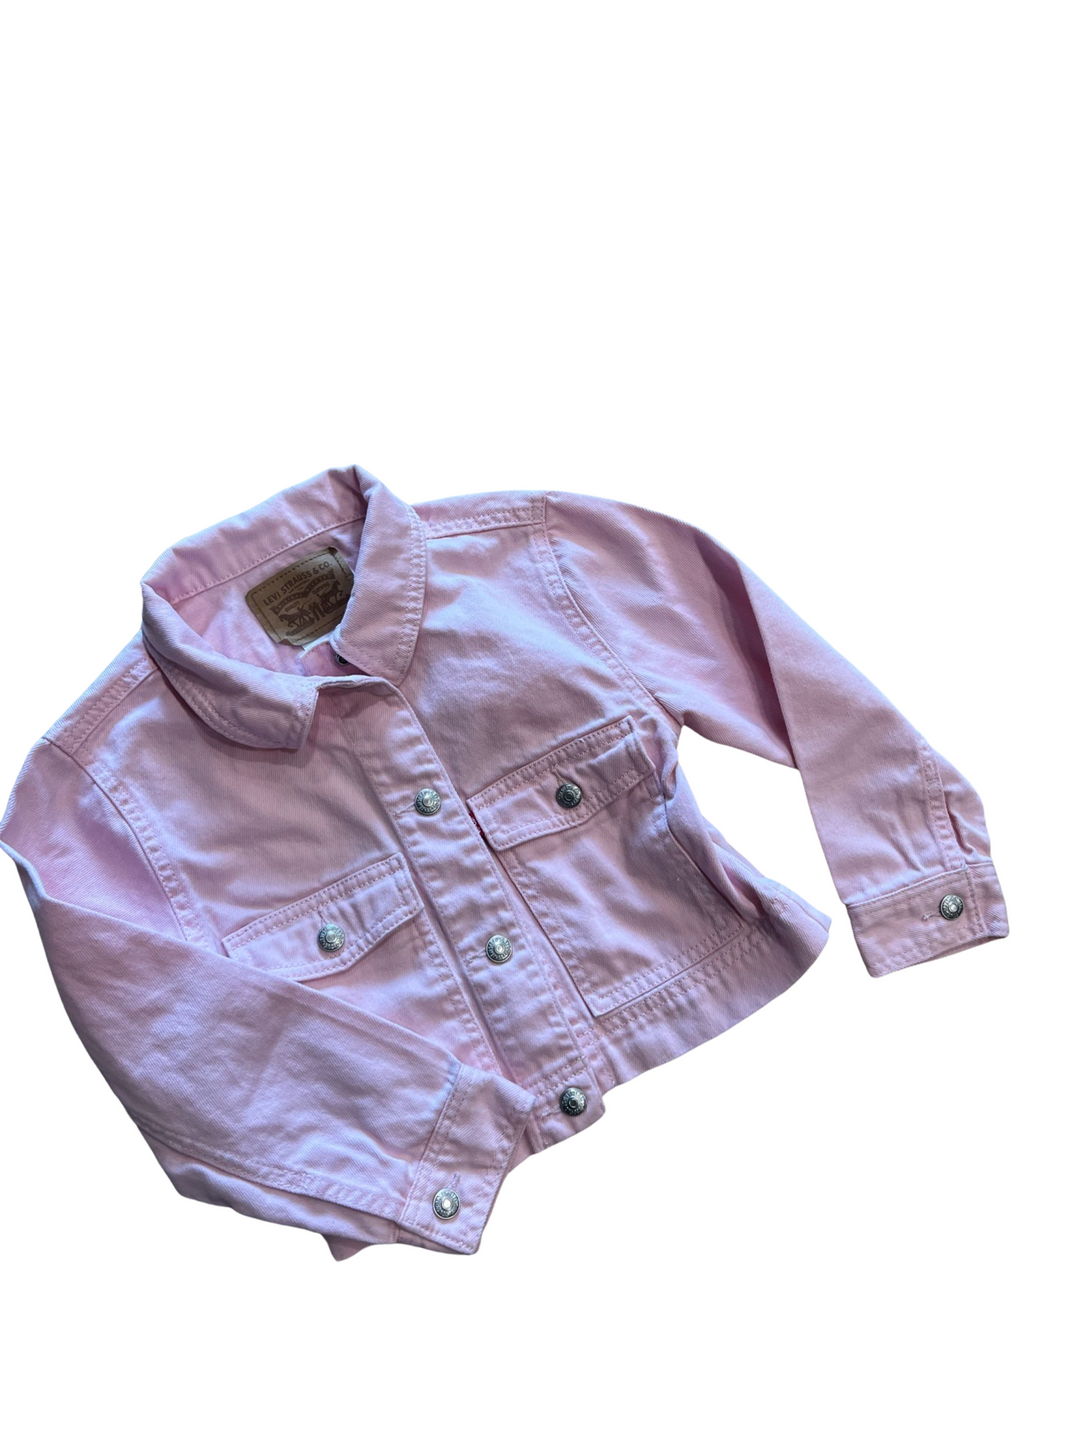 Levi's Pink Jacket